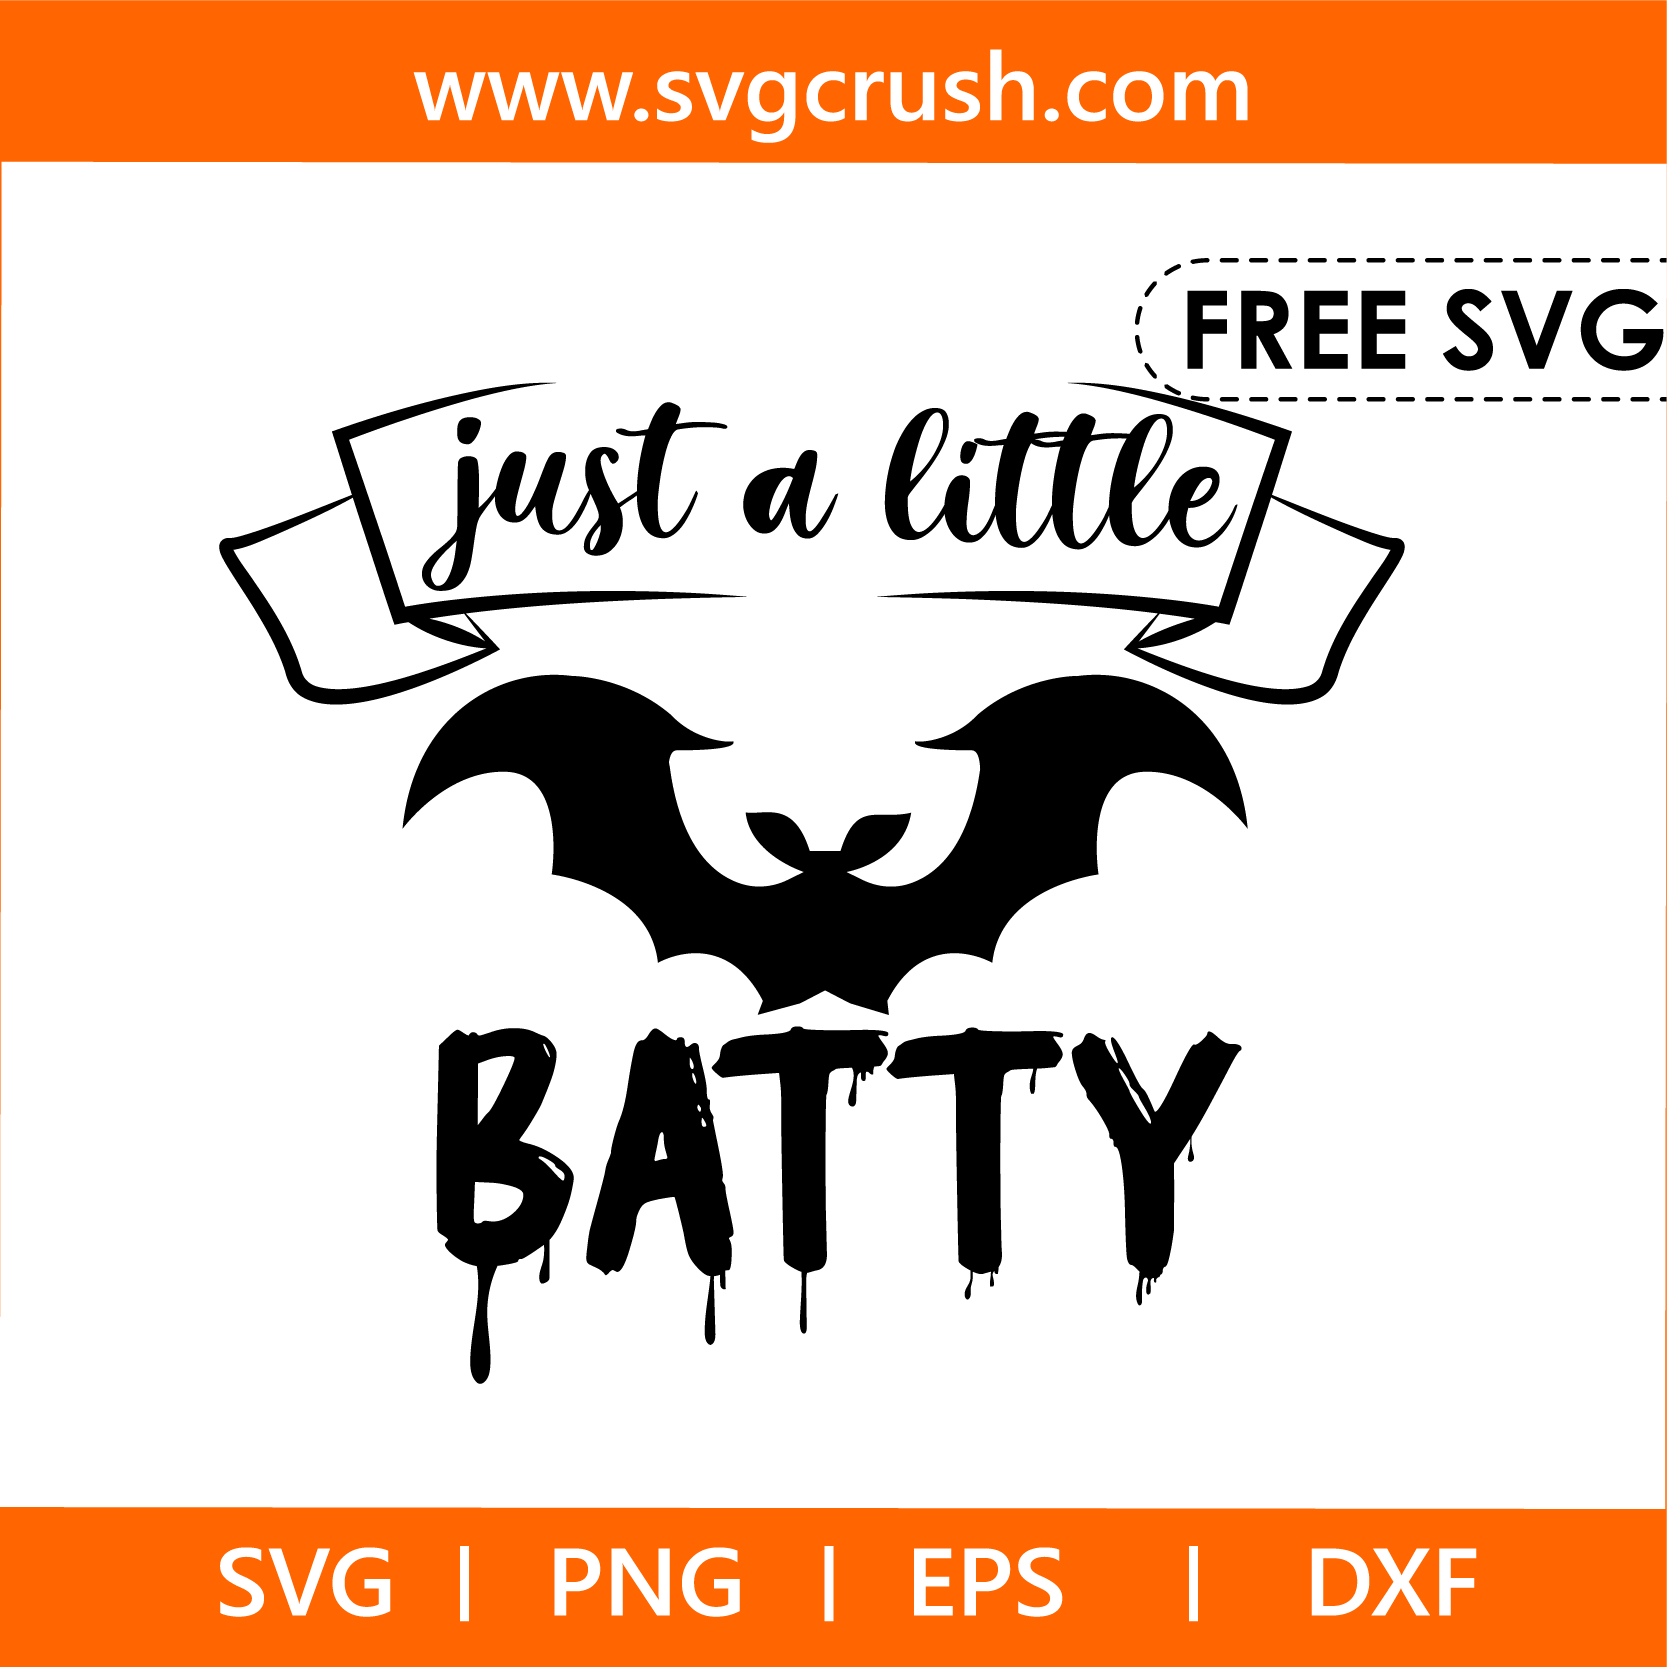 free just-a-little-batty-003 svg